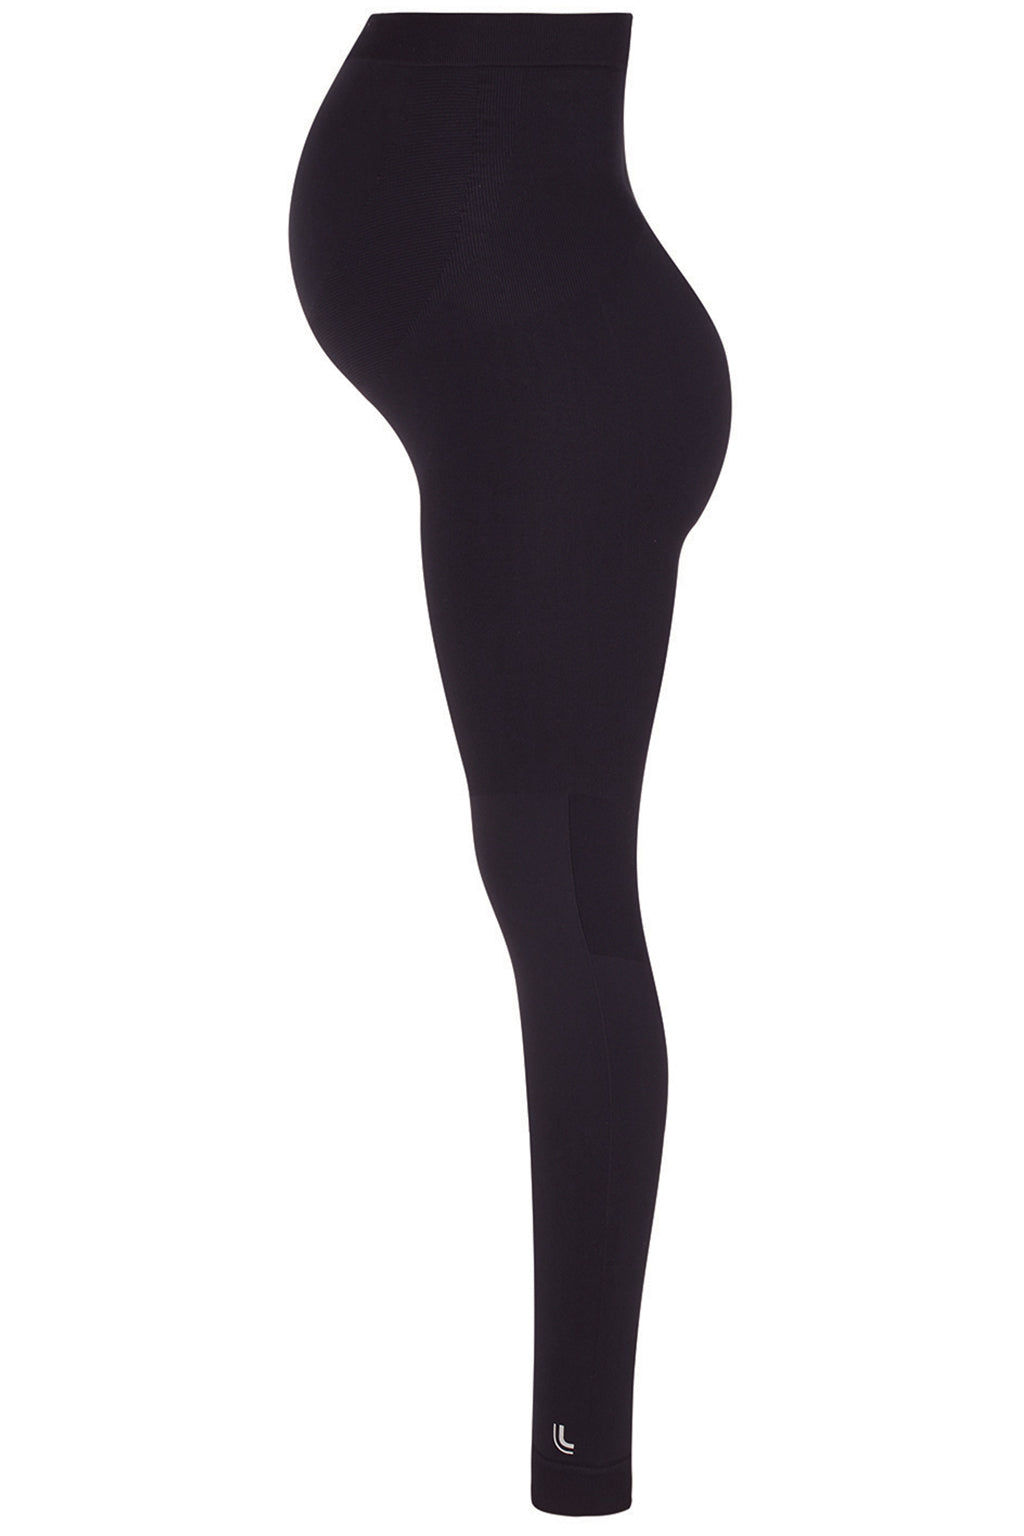 pgeraug leggings for women high waist thin shark skin pregnant wearing  pregnant leggings pants for women black m